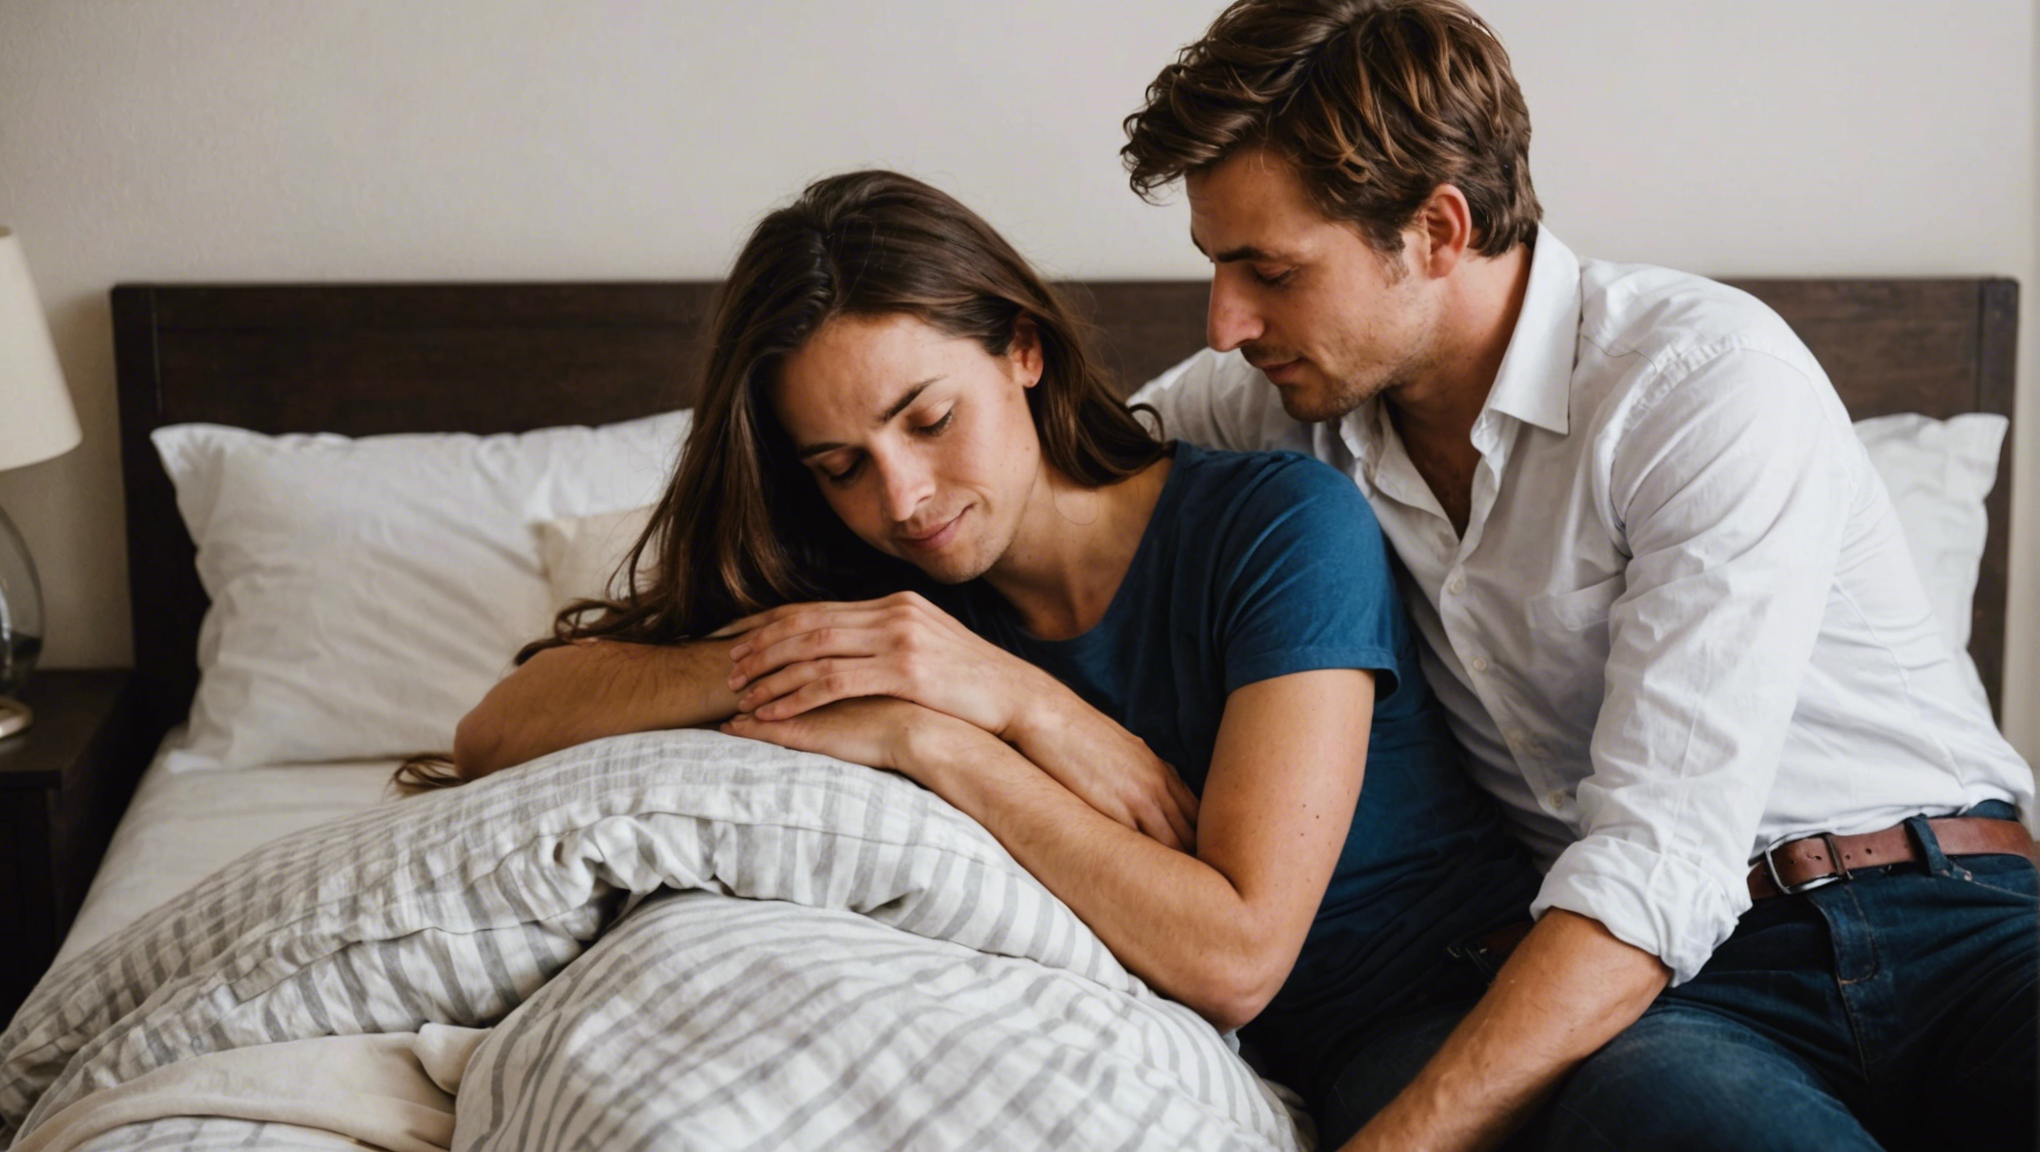 découvrez si les couples amoureux dorment mieux ensemble dans cette étude sur le sommeil et la relation de couple.